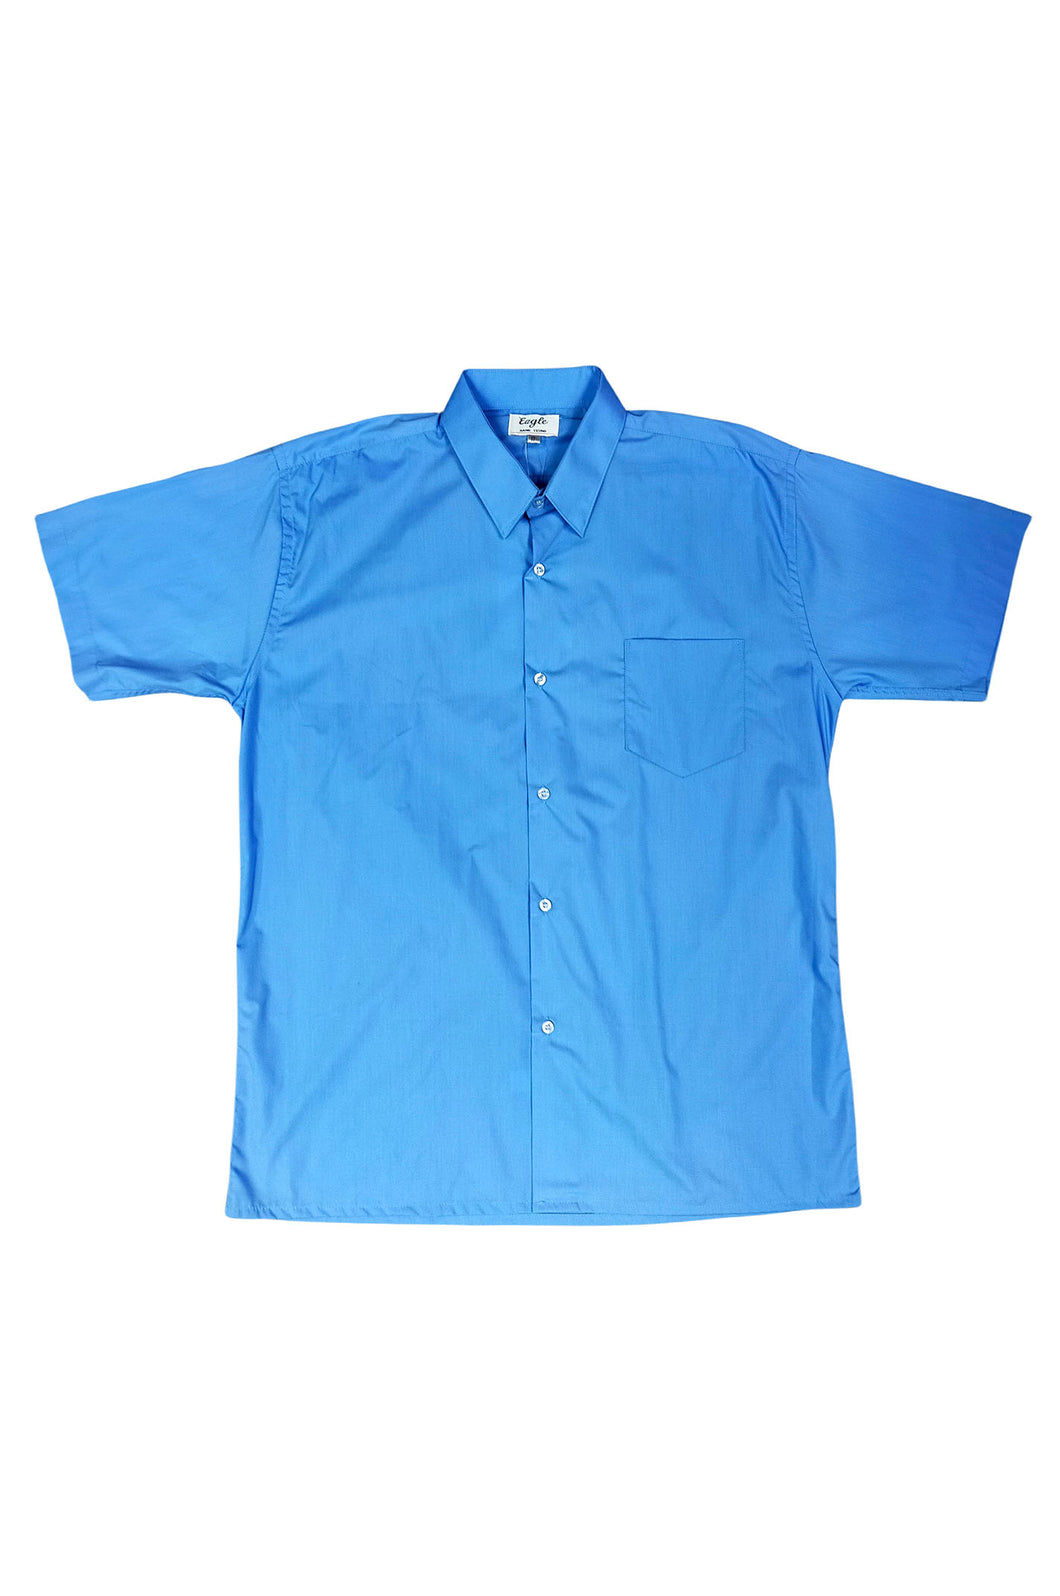 訂製藍色短袖恤衫 單帶設計 訂購團體車隊襯衫 恤衫供應商  HK-Hanyeung-004